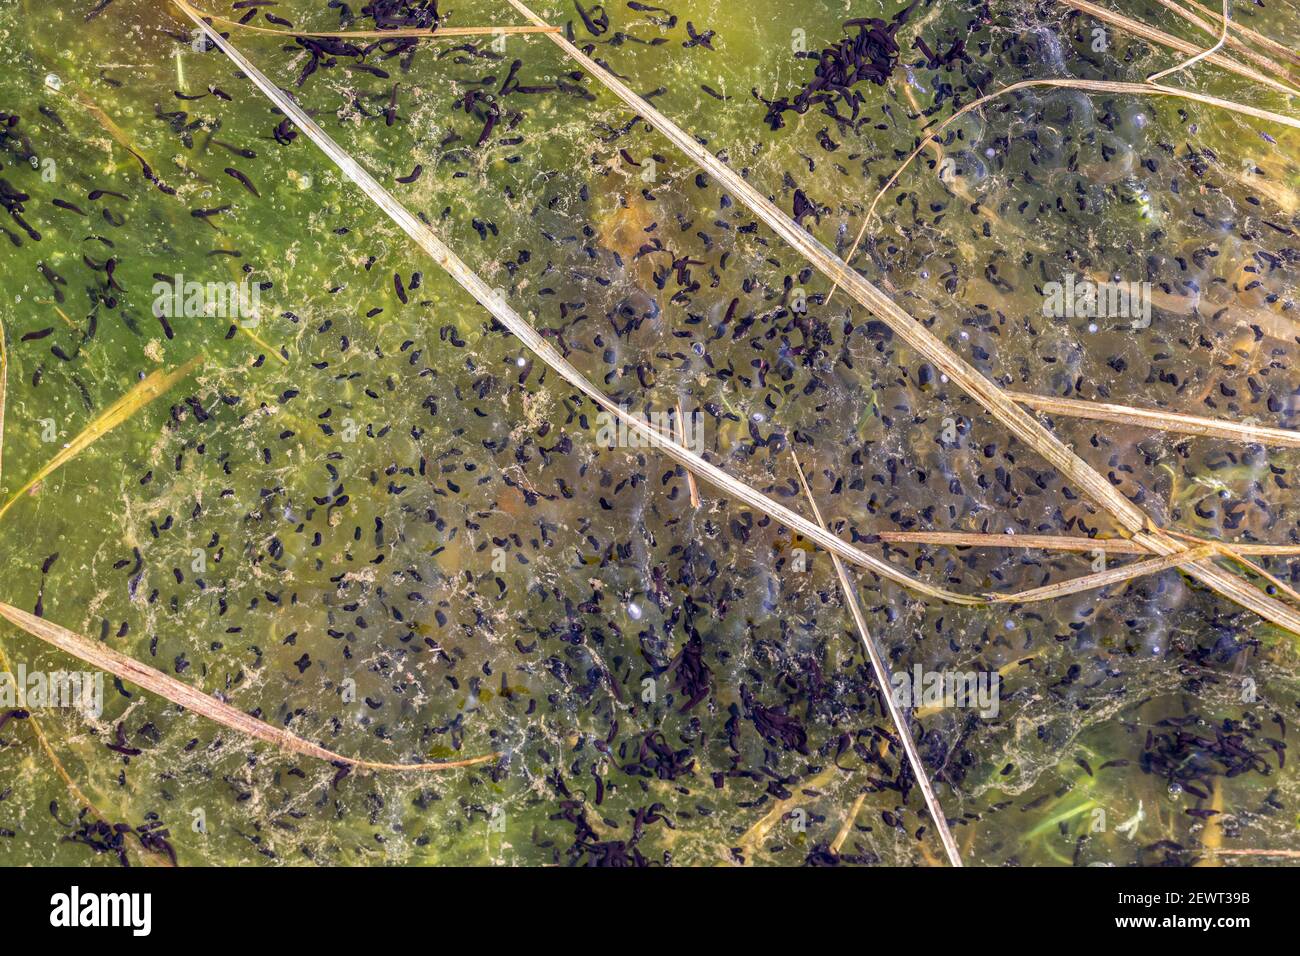 Cúmulos de renacuajos que crecen en un charco estancado, Condado de Kerry, Irlanda Foto de stock